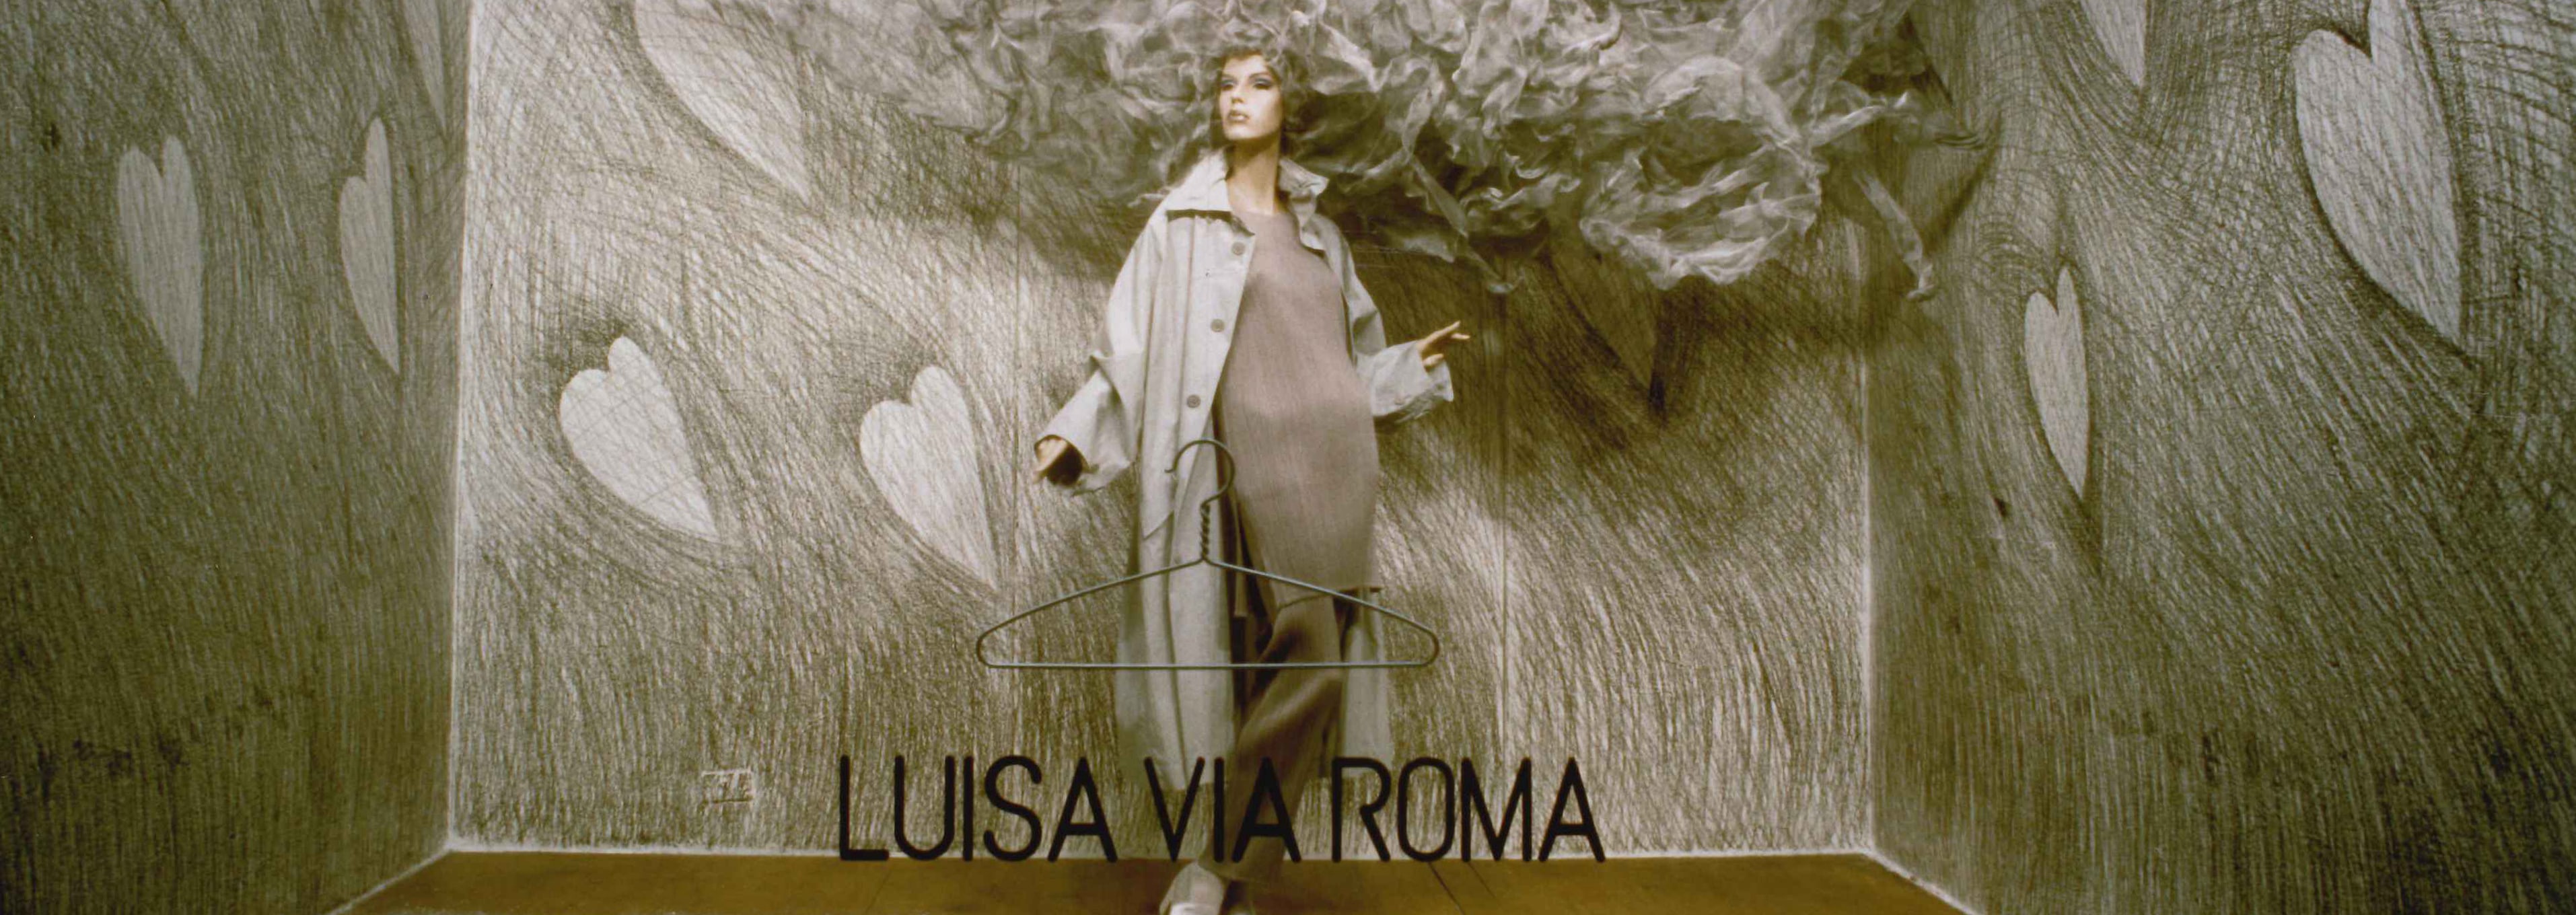 Lorenzo Gemma, il talento dietro le vetrine di LuisaViaRoma